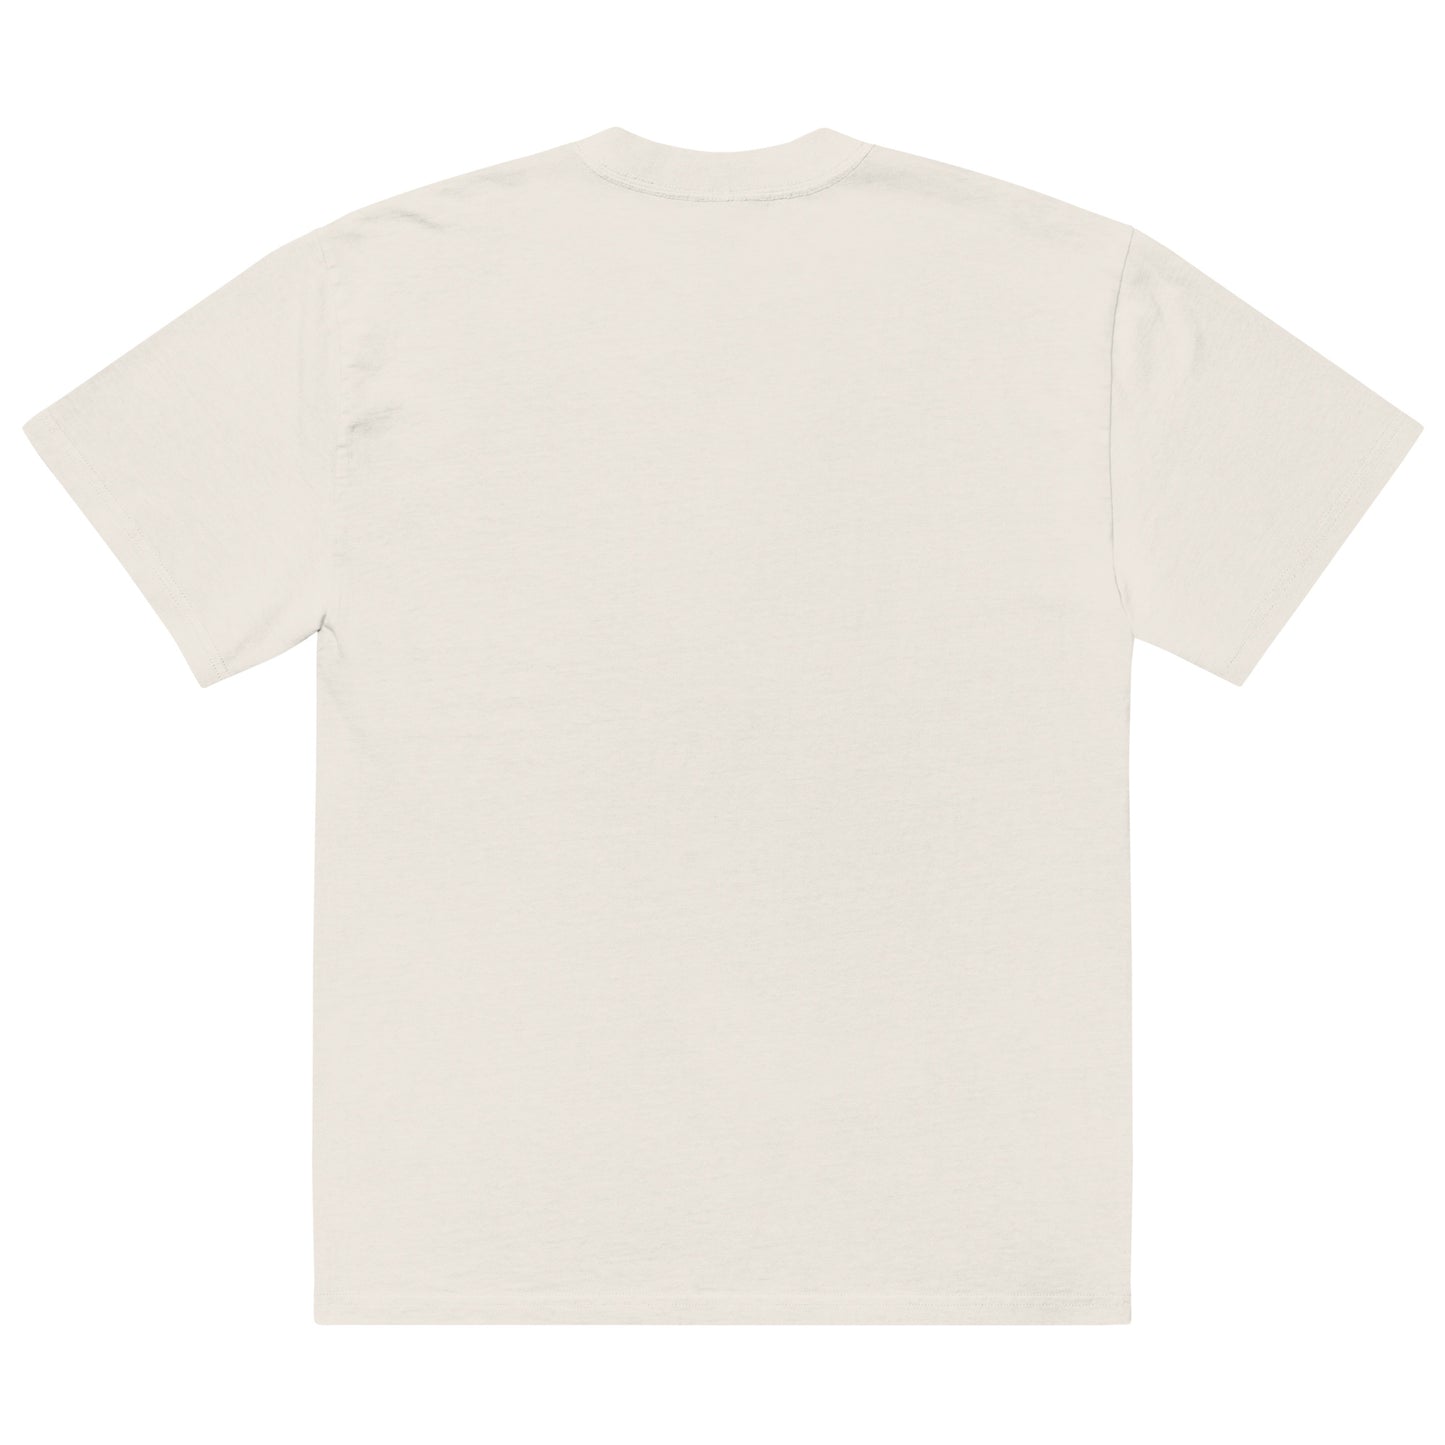 T-shirt Femme - Les Yeux Arc-En-Ciel